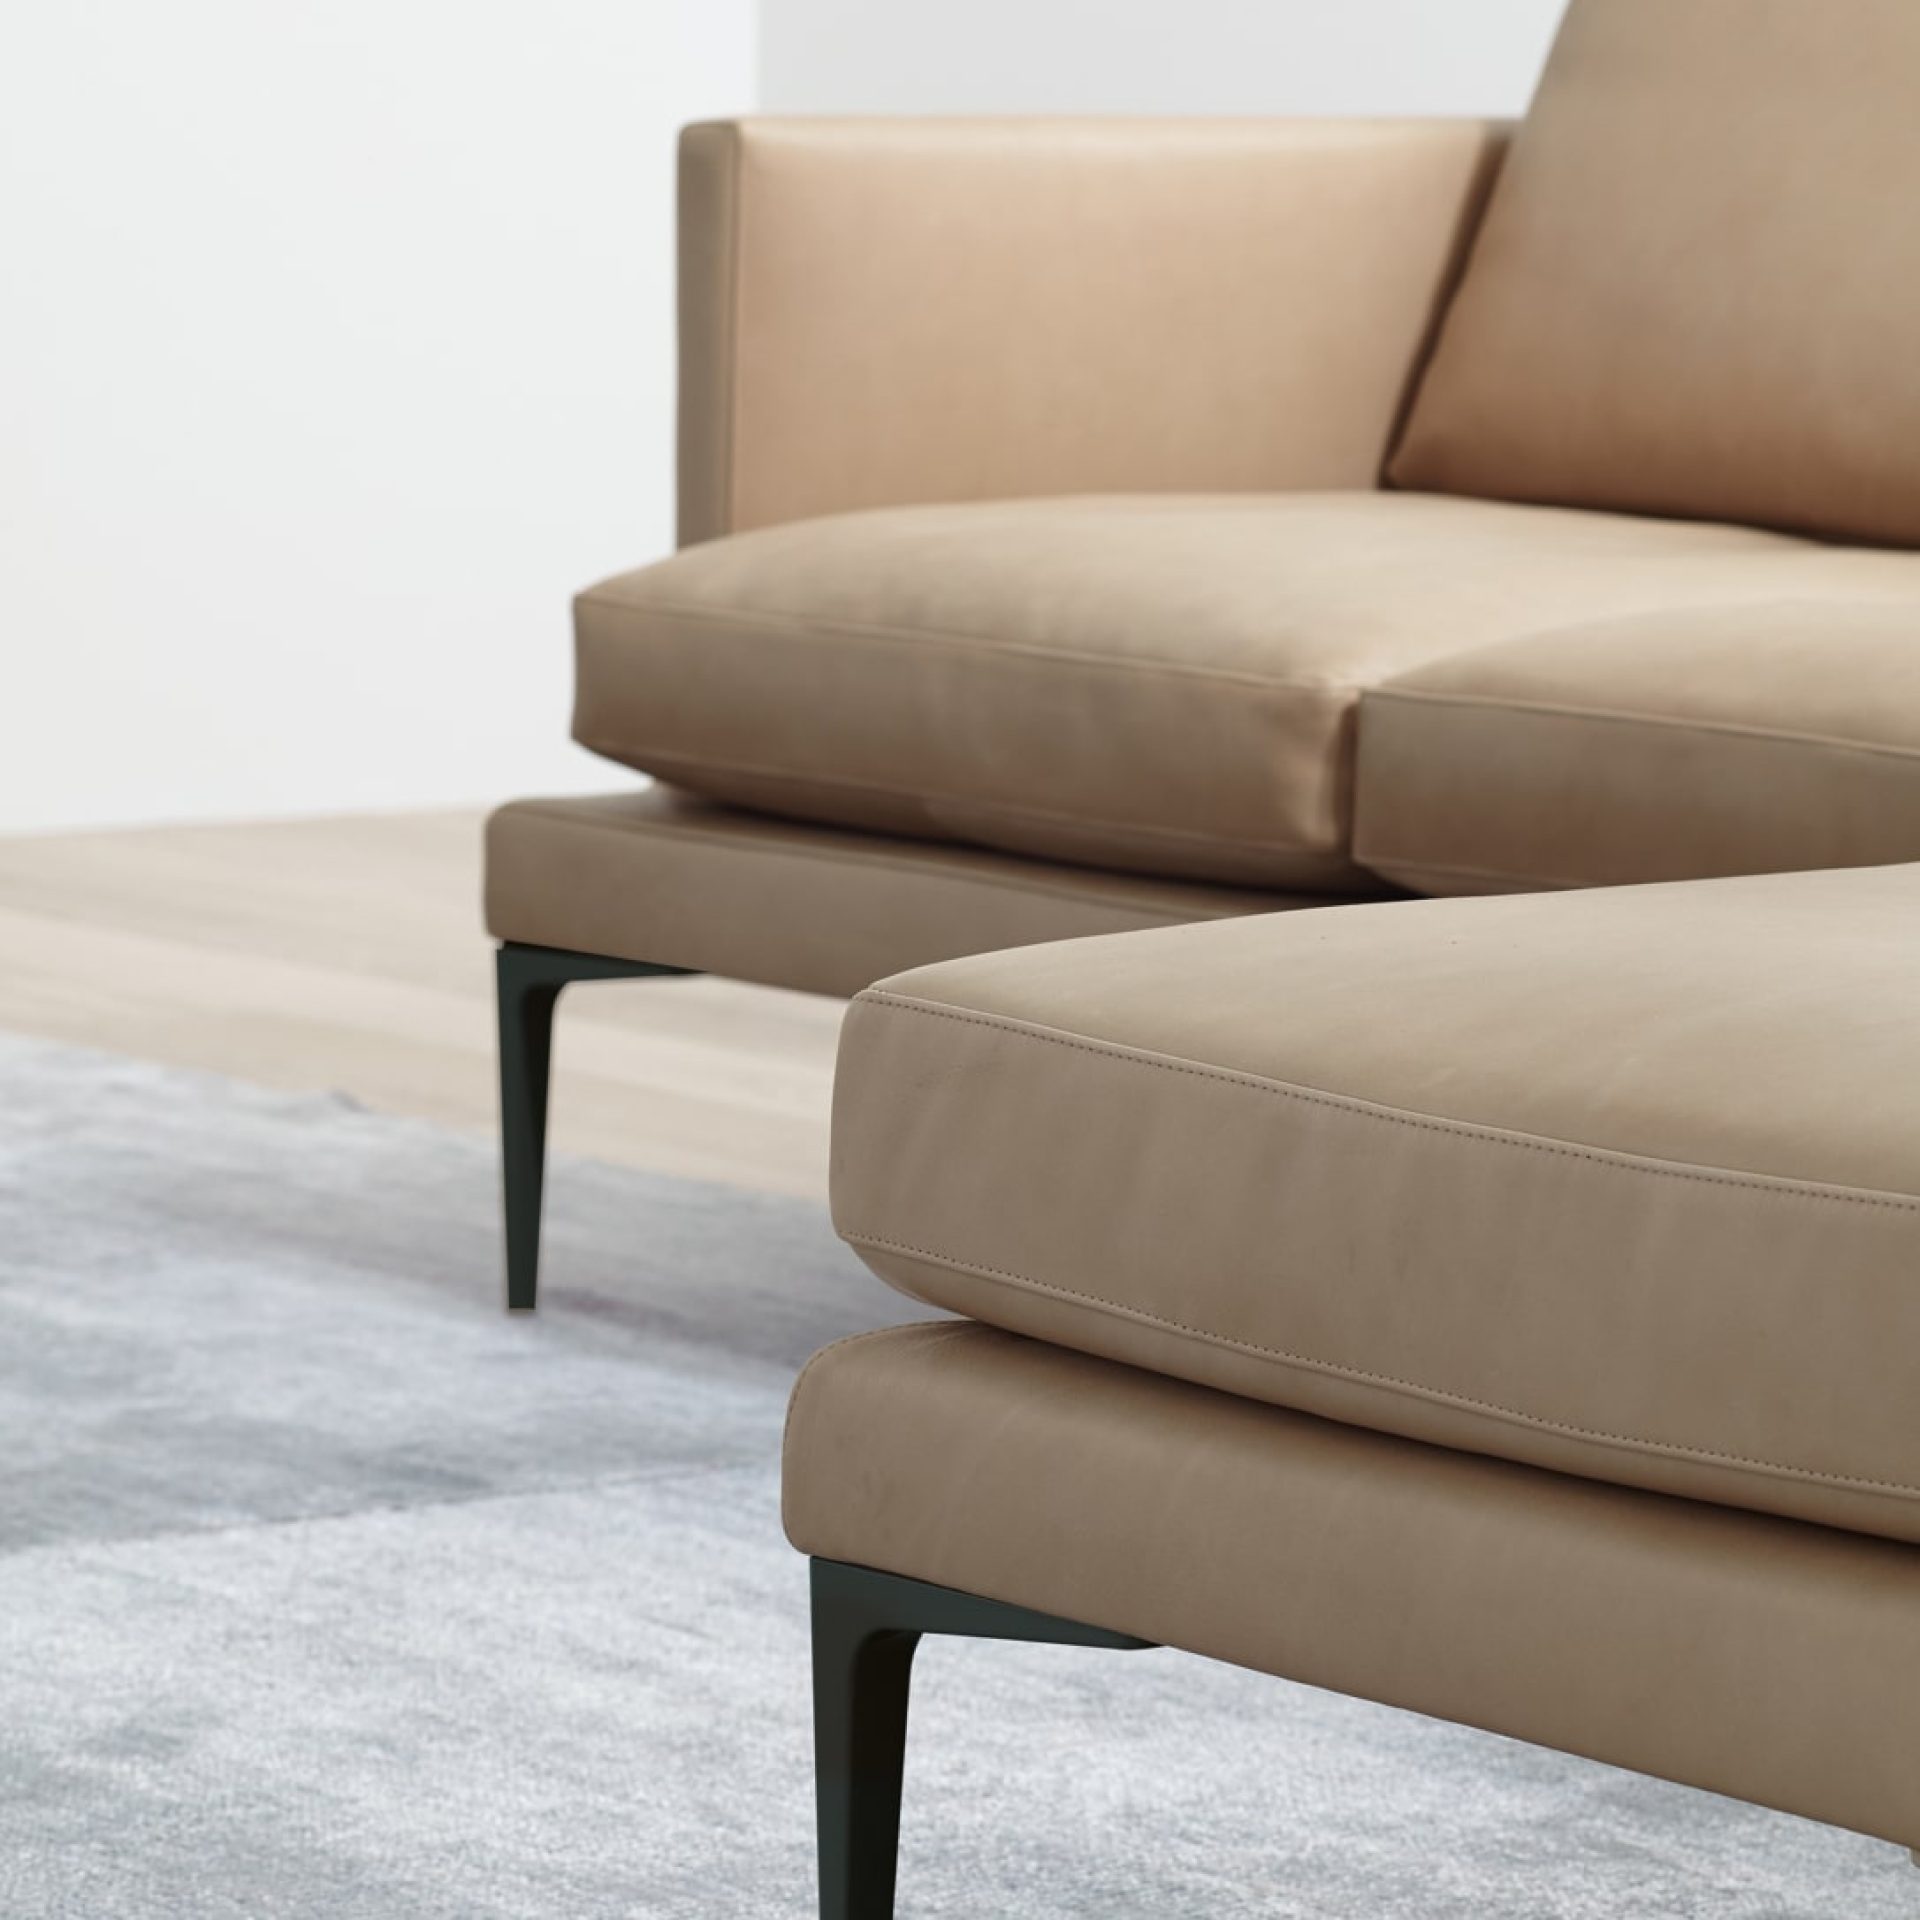 Canapé en cuir beige design avec des pattes en acier choisi par eba pour ses projets de design d'intérieurs